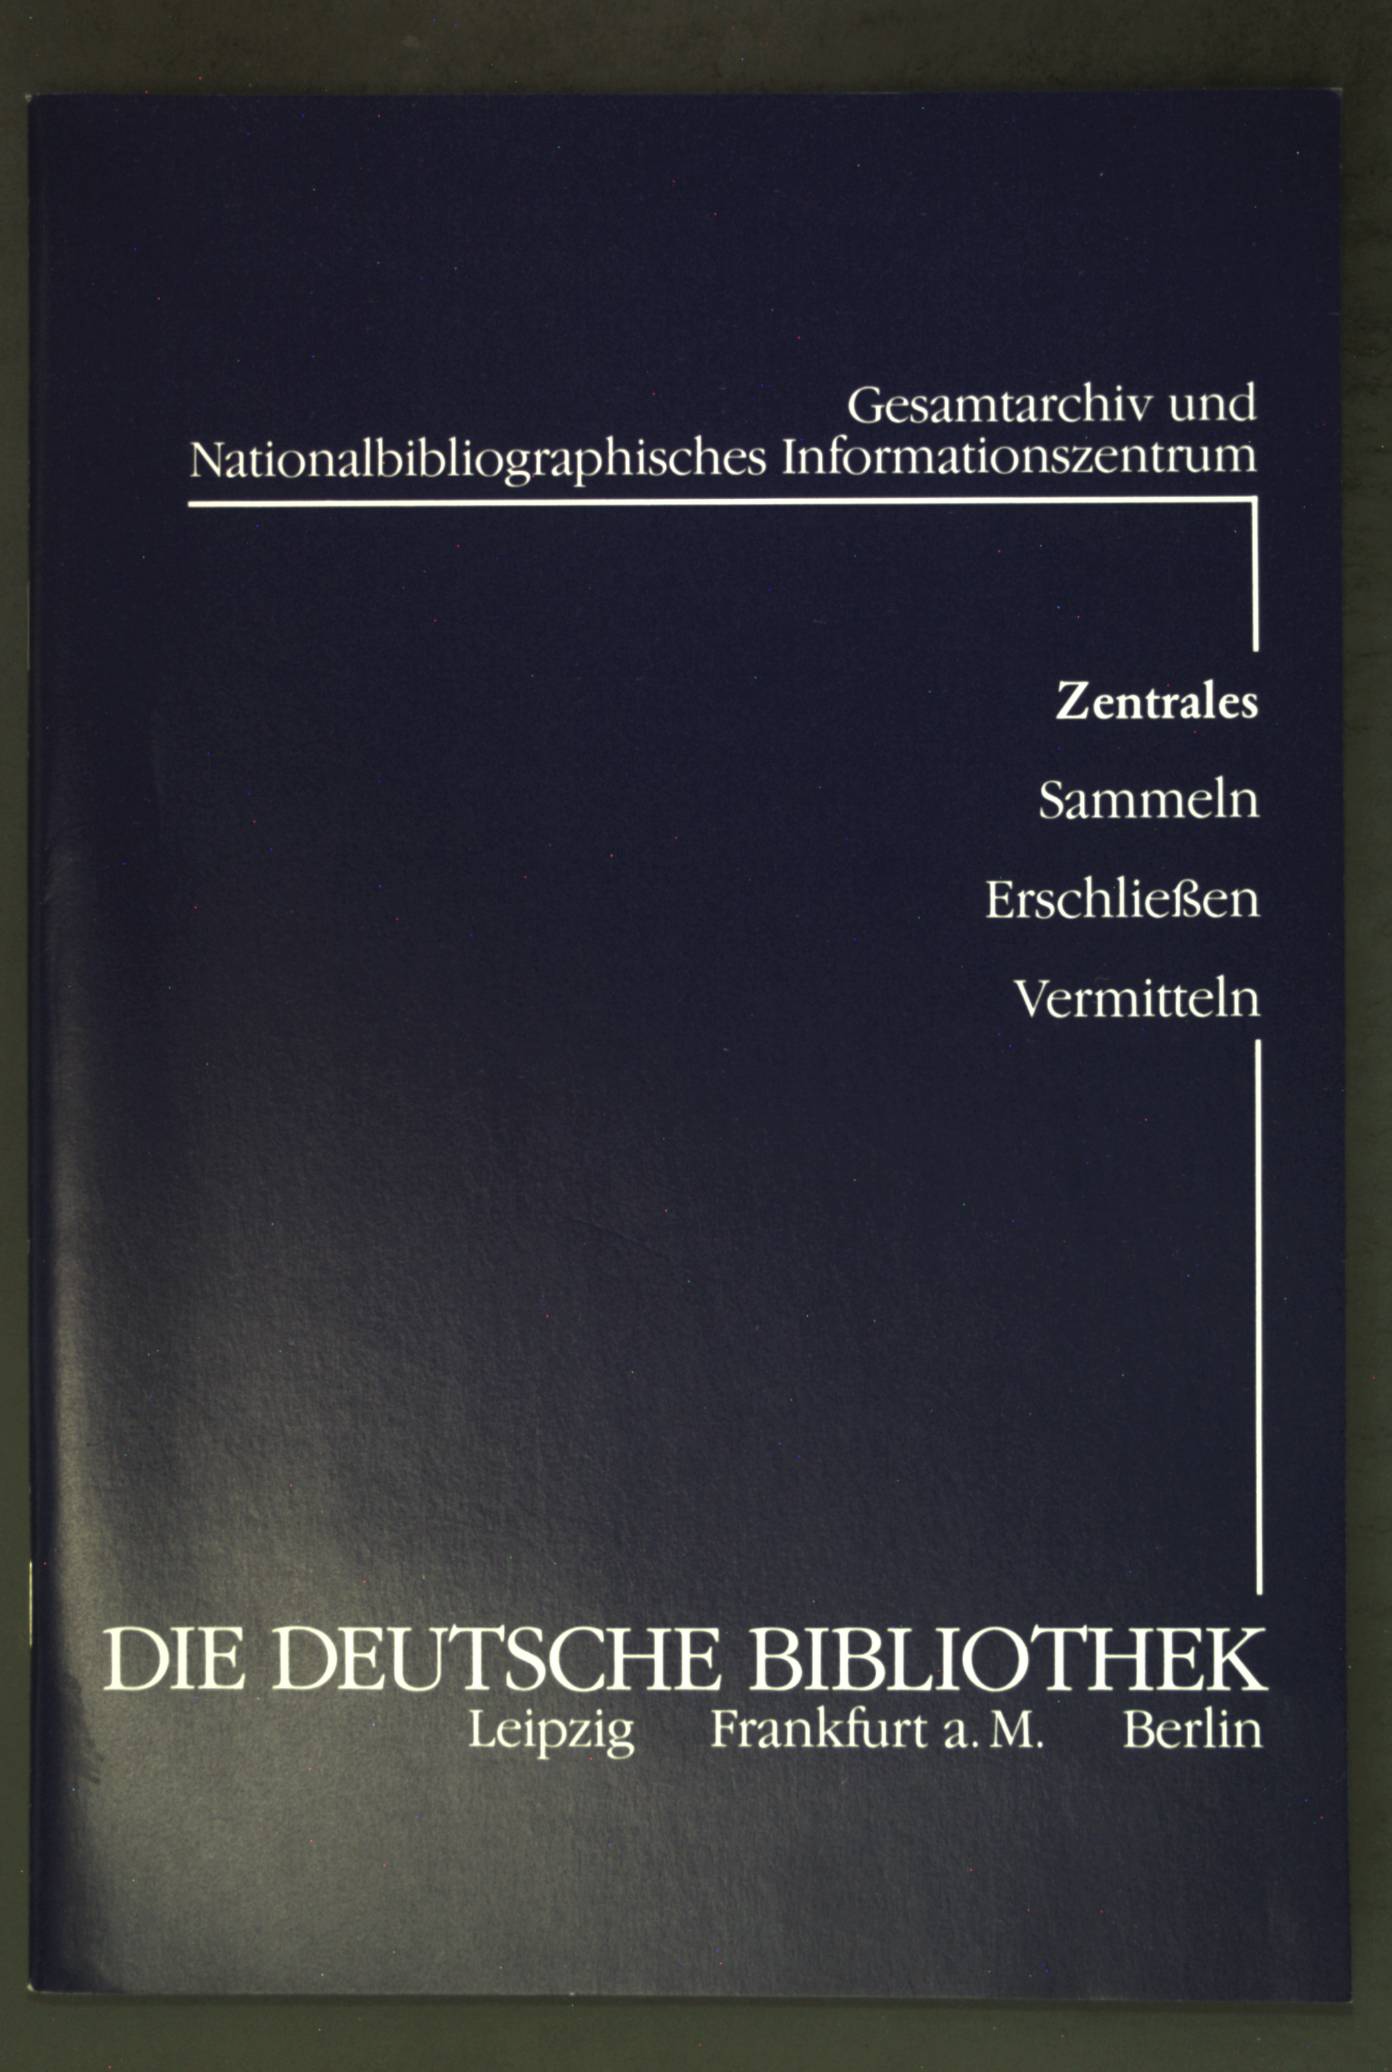 Die Deutsche Bibliothek : Gesamtarchiv und nationalbibliographisches Informationszentrum ; zentrales Sammeln, Erschliessen, Vermitteln.